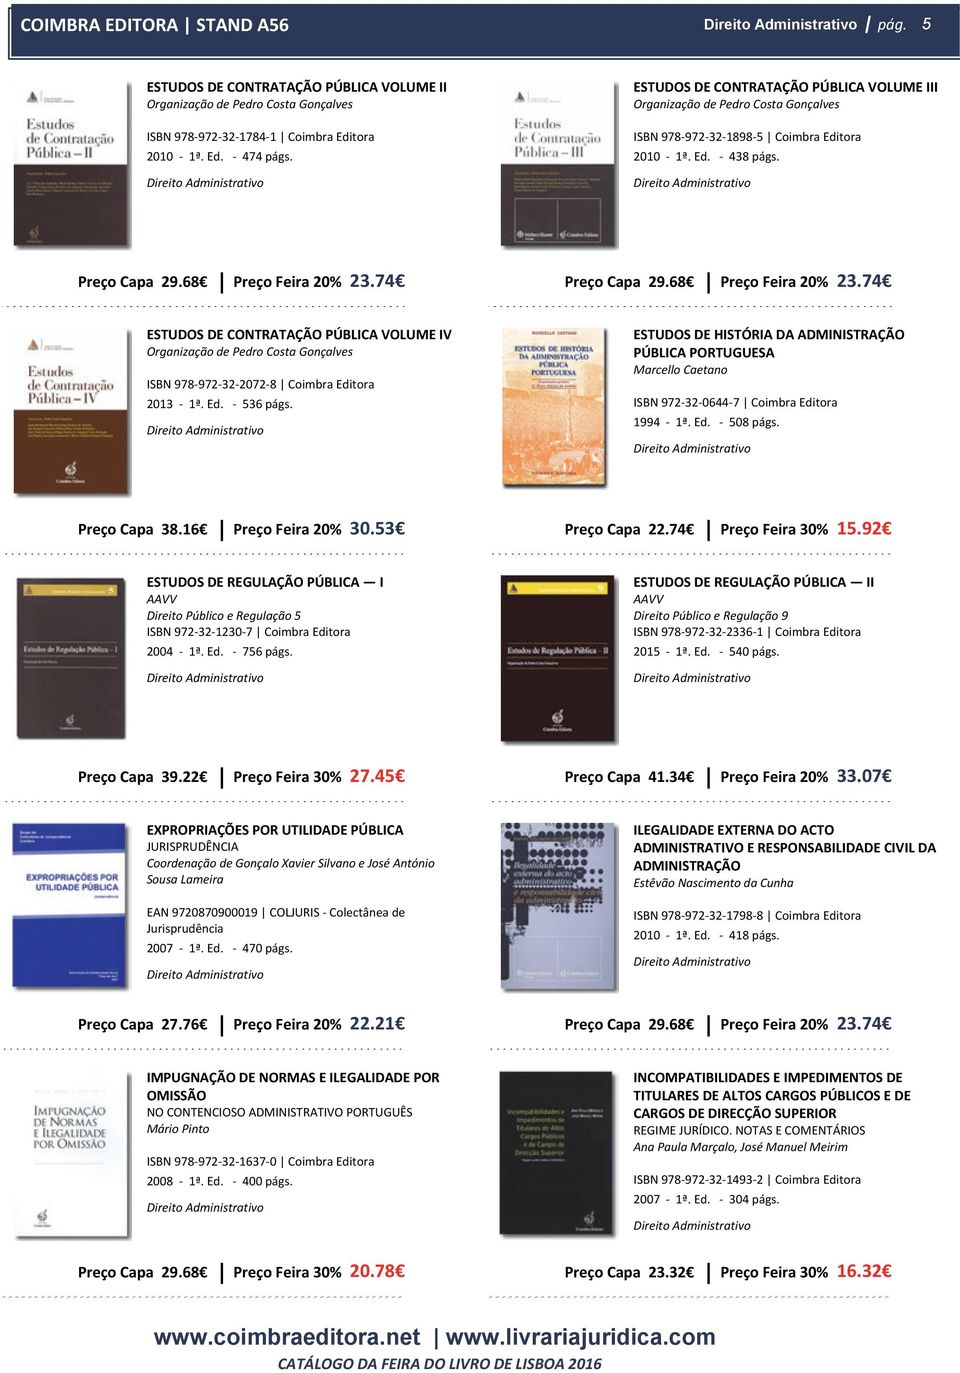 74 ESTUDOS DE CONTRATAÇÃO PÚBLICA VOLUME IV Organização de Pedro Costa Gonçalves ISBN 978-972-32-2072-8 Coimbra Editora 2013-1ª. Ed. - 536 págs.